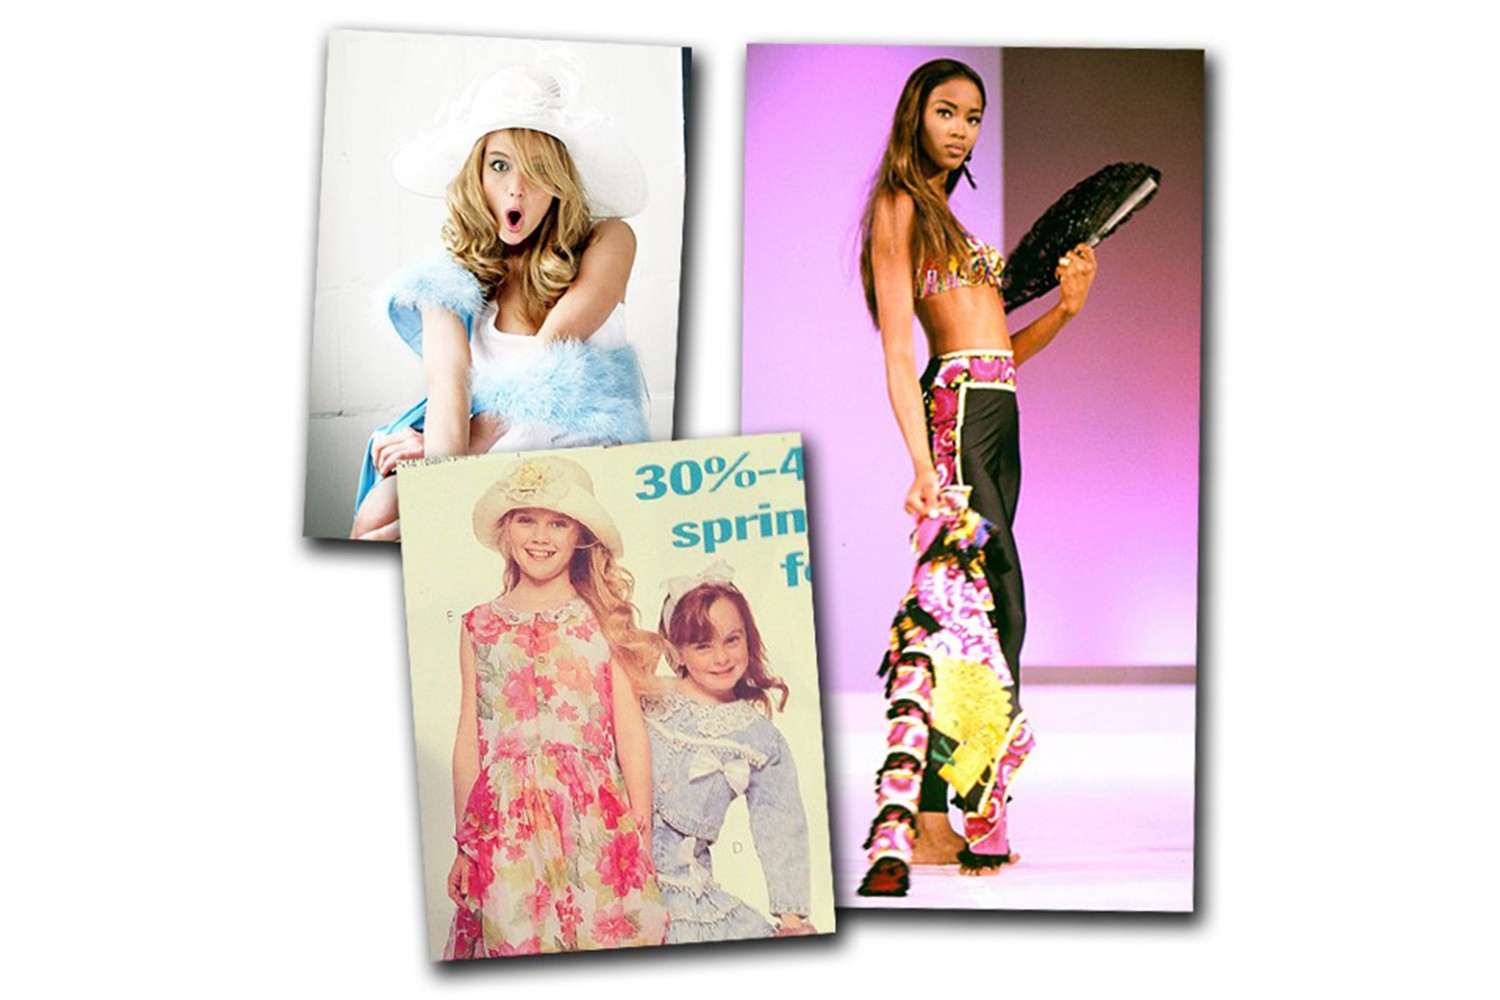 Atuais ícones de estilo: Jennifer Lawrence e Kirsten Dunst (de vestido floral logo abaixo). À direita, Naomi Campbell com apenas 15 anos    